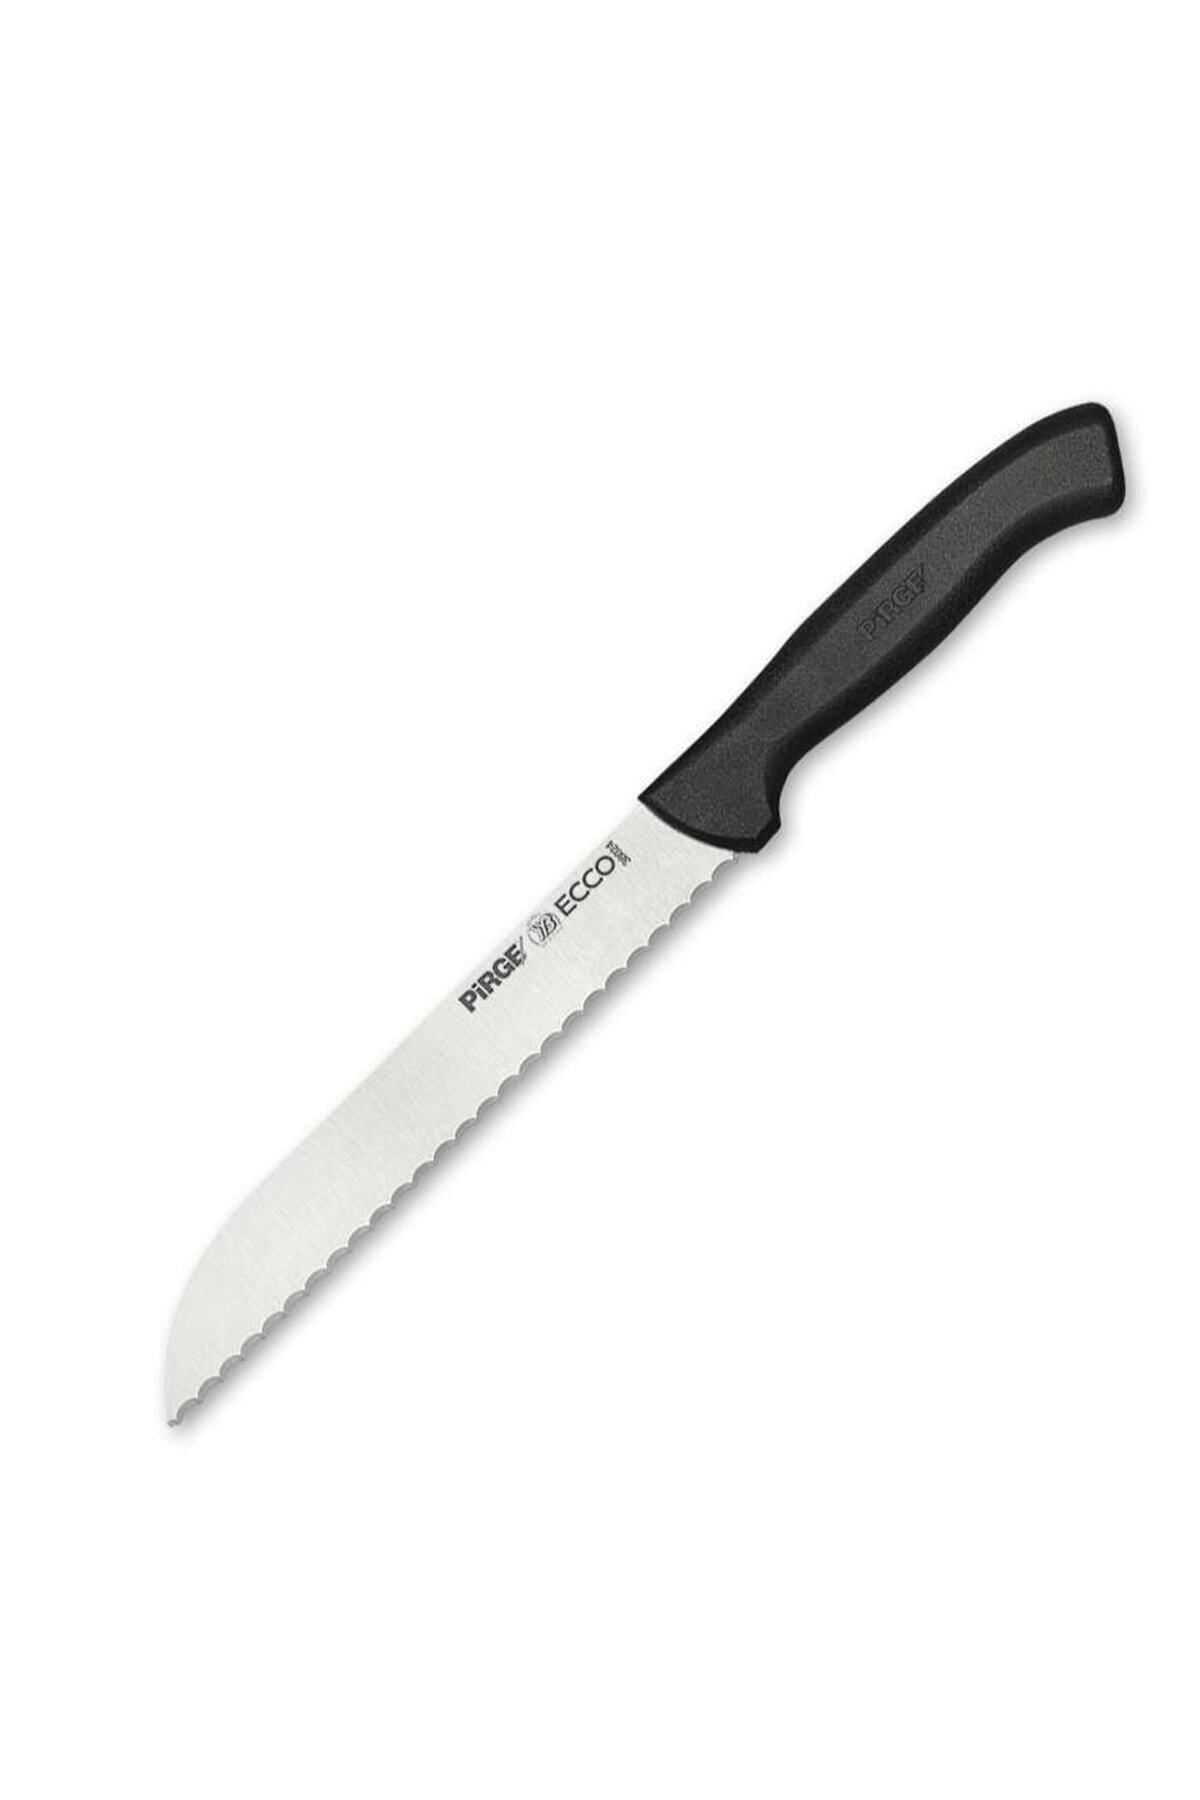 ÖZTİRYAKİLER 38024 Ecco Ekmek Bıçağı Pro 17.5cm Dişli